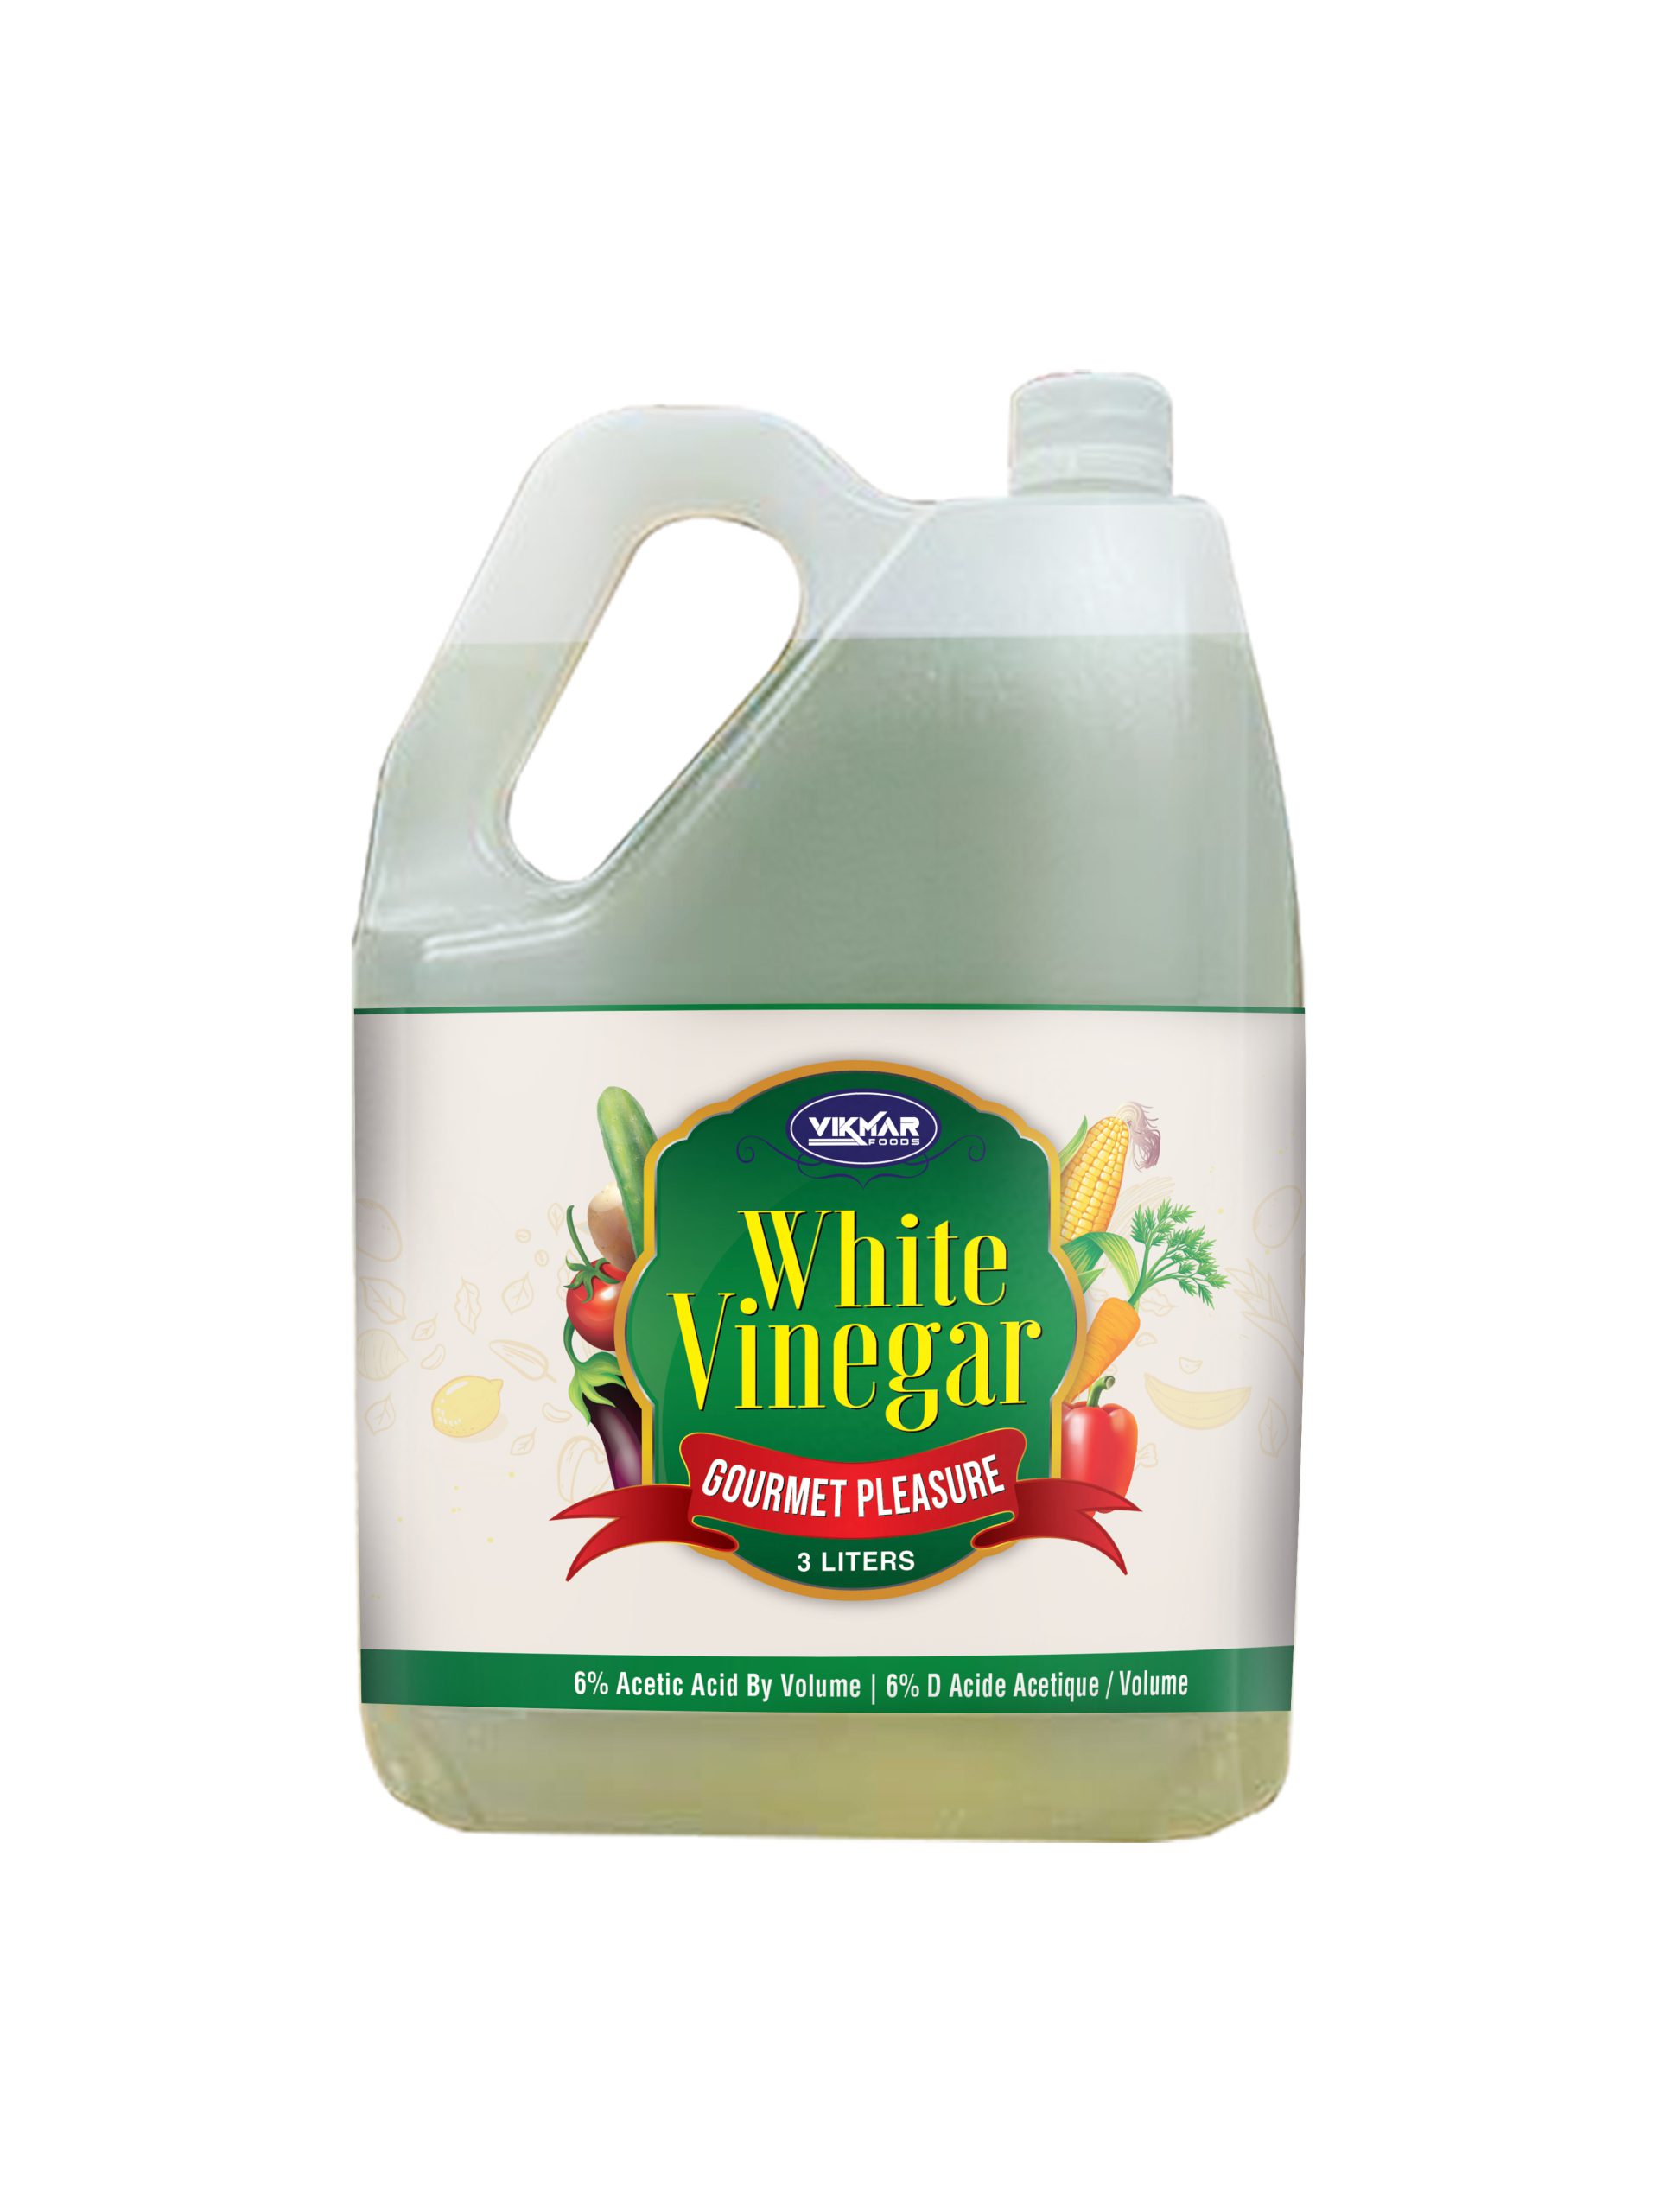 White vinegar 1liter bottle